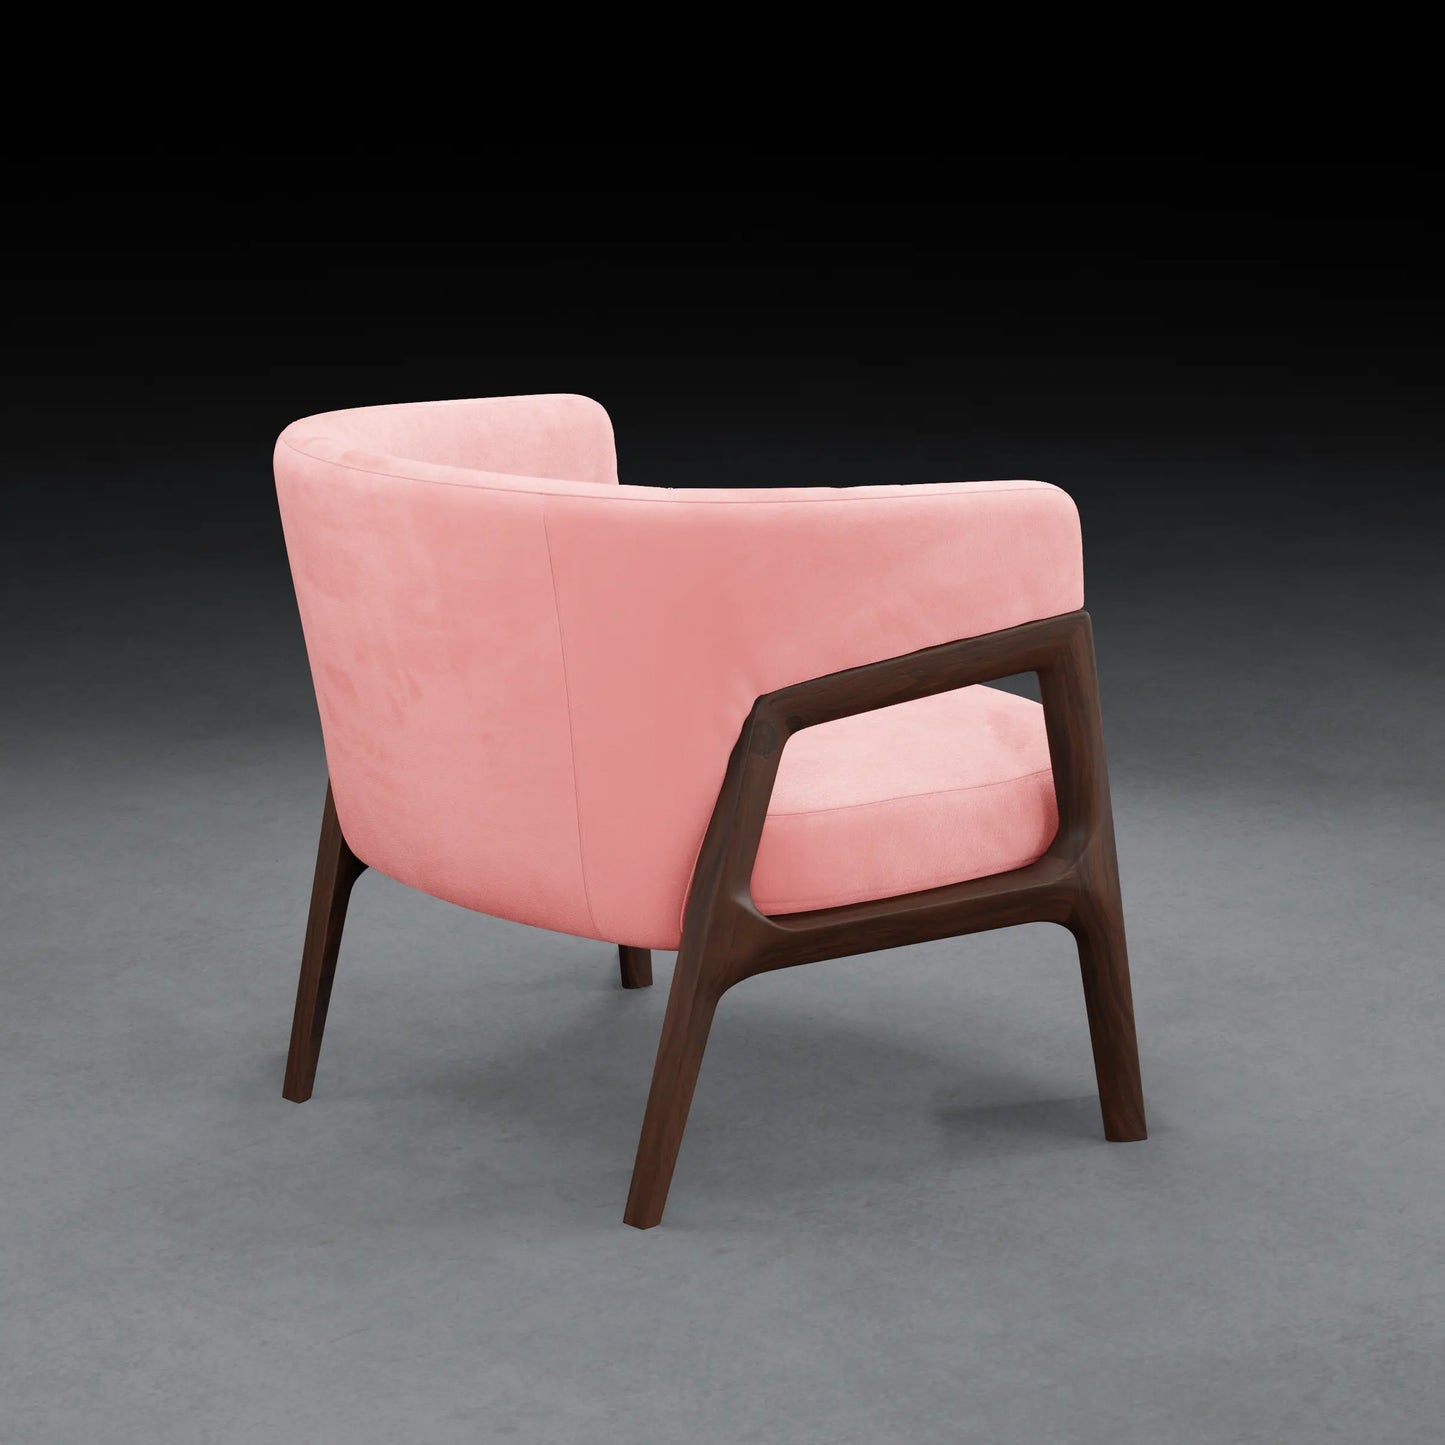 LEMON - Armchair in Teak wood - Velvet Finish | Pink Color